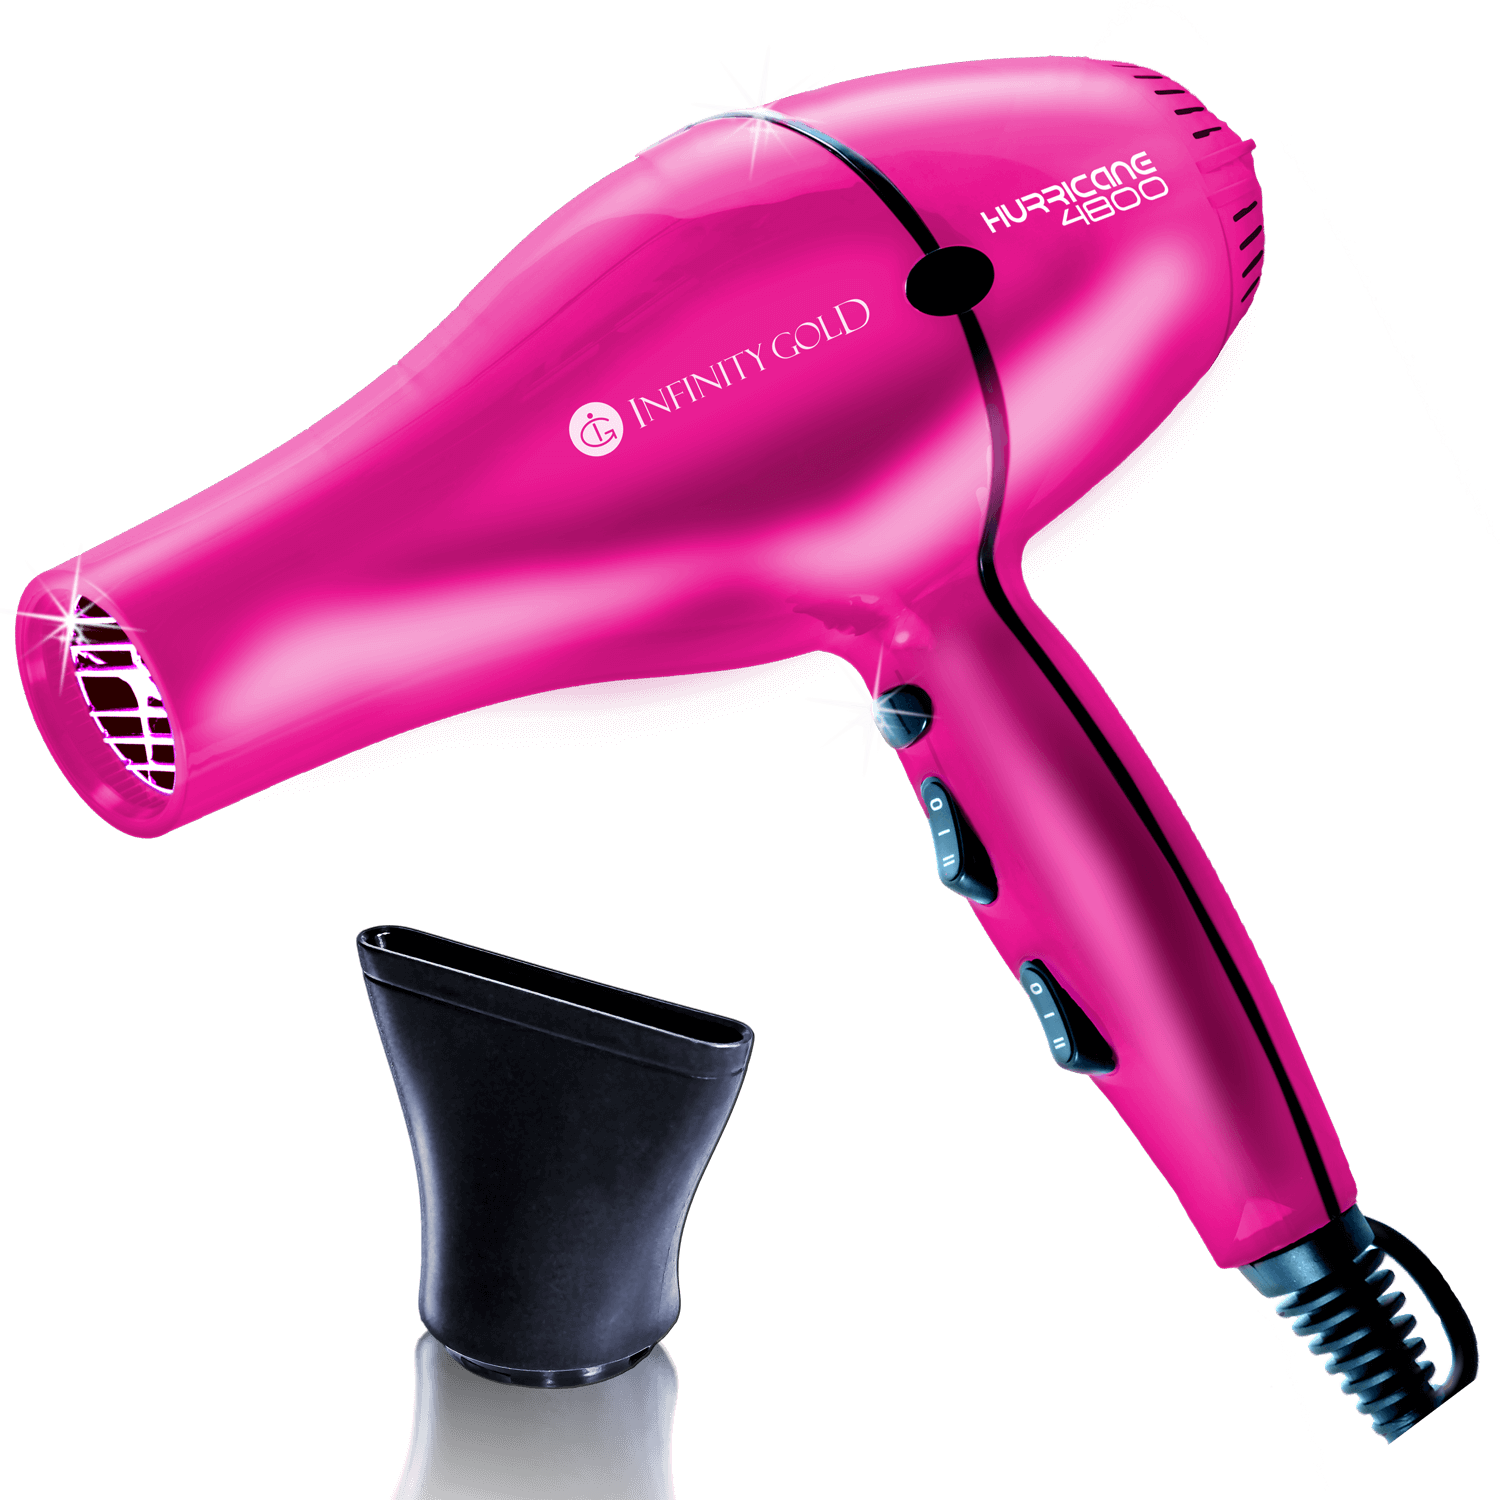 Фен EVO Beauty hair Dryer. Фен JRL Phantom. Фен для волос 800p. Фен для волос розовый